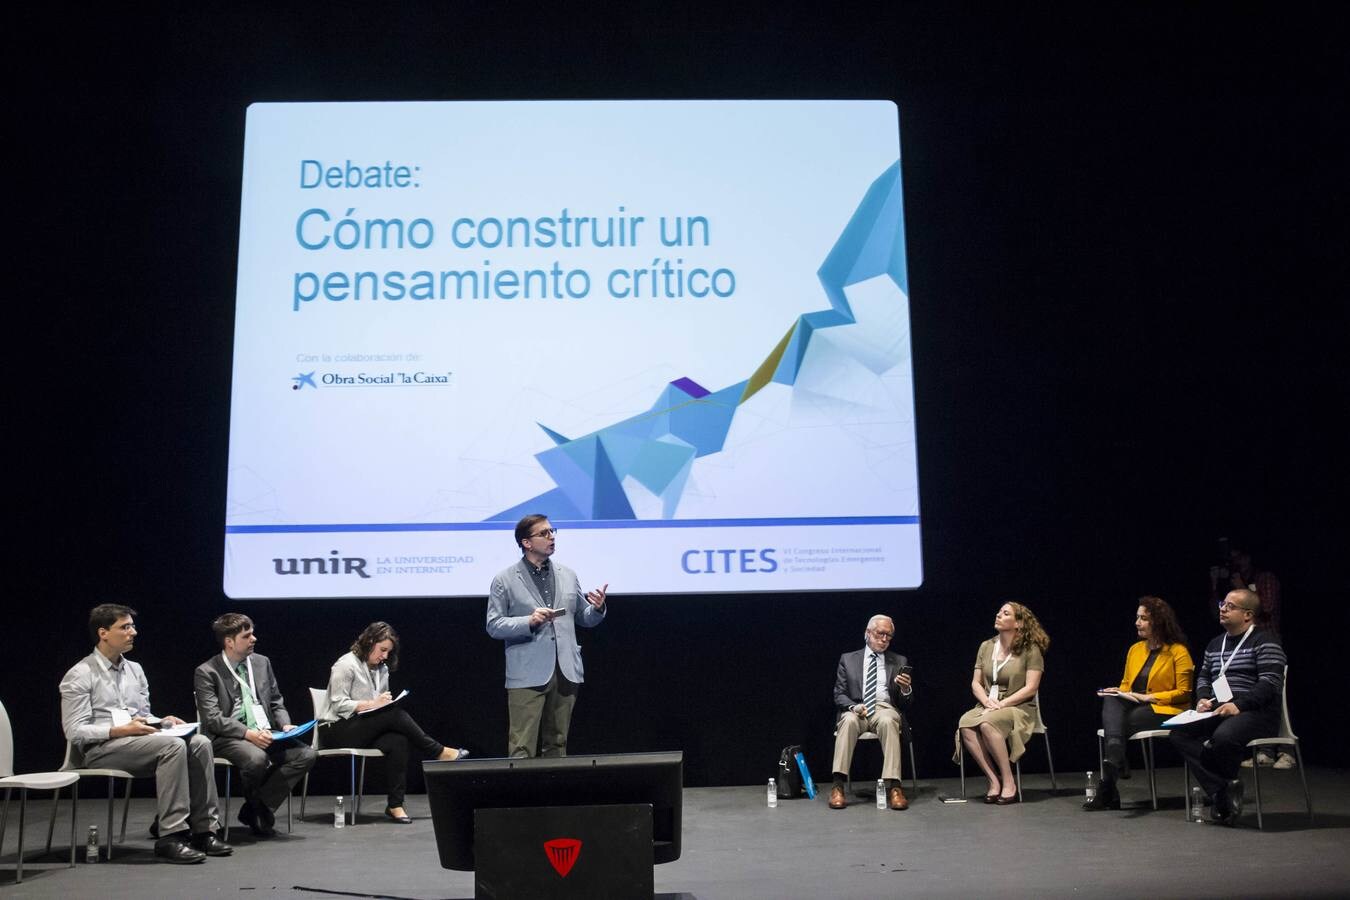 El congreso CITES reserva un apartado preferente de su sexta edición a la vuelta al debate y a la construcción del pensamiento crítico